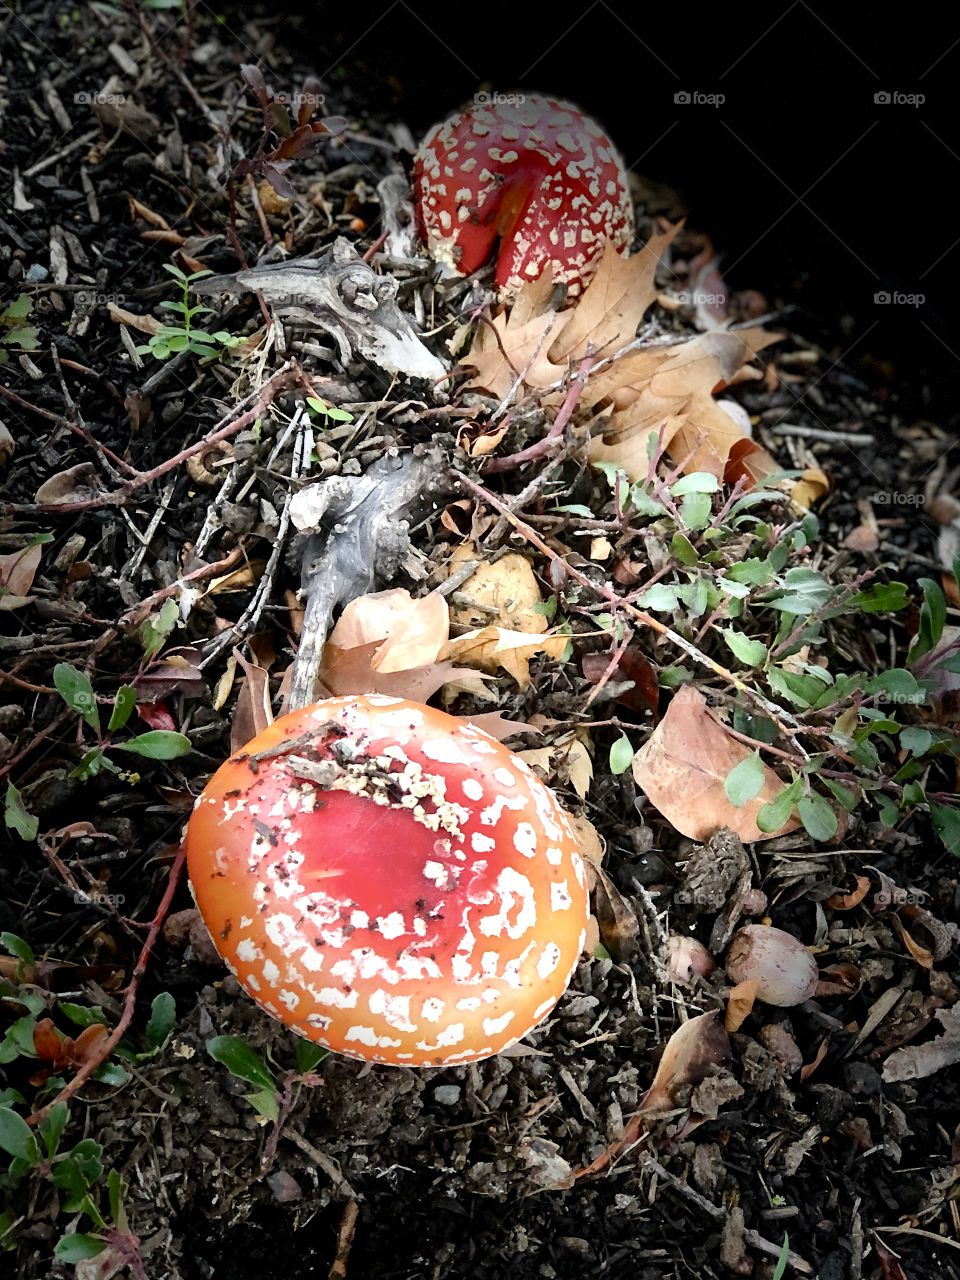 Magnificent Mushrooms 